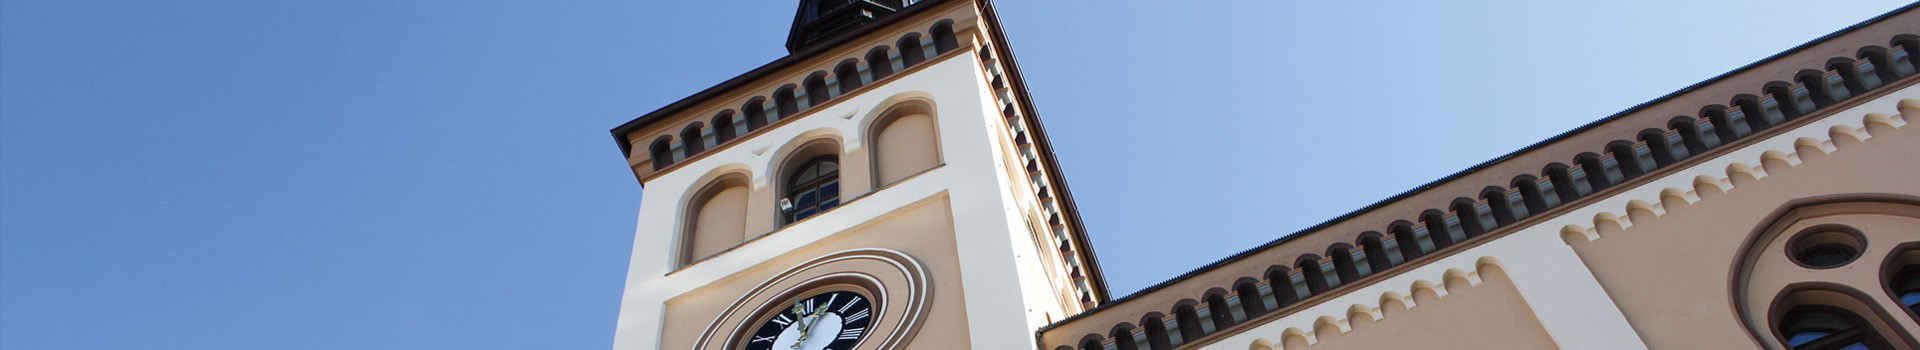 Rathaus in Pfaffenhofen im Sommer. Abgebildet ist die Fassade.